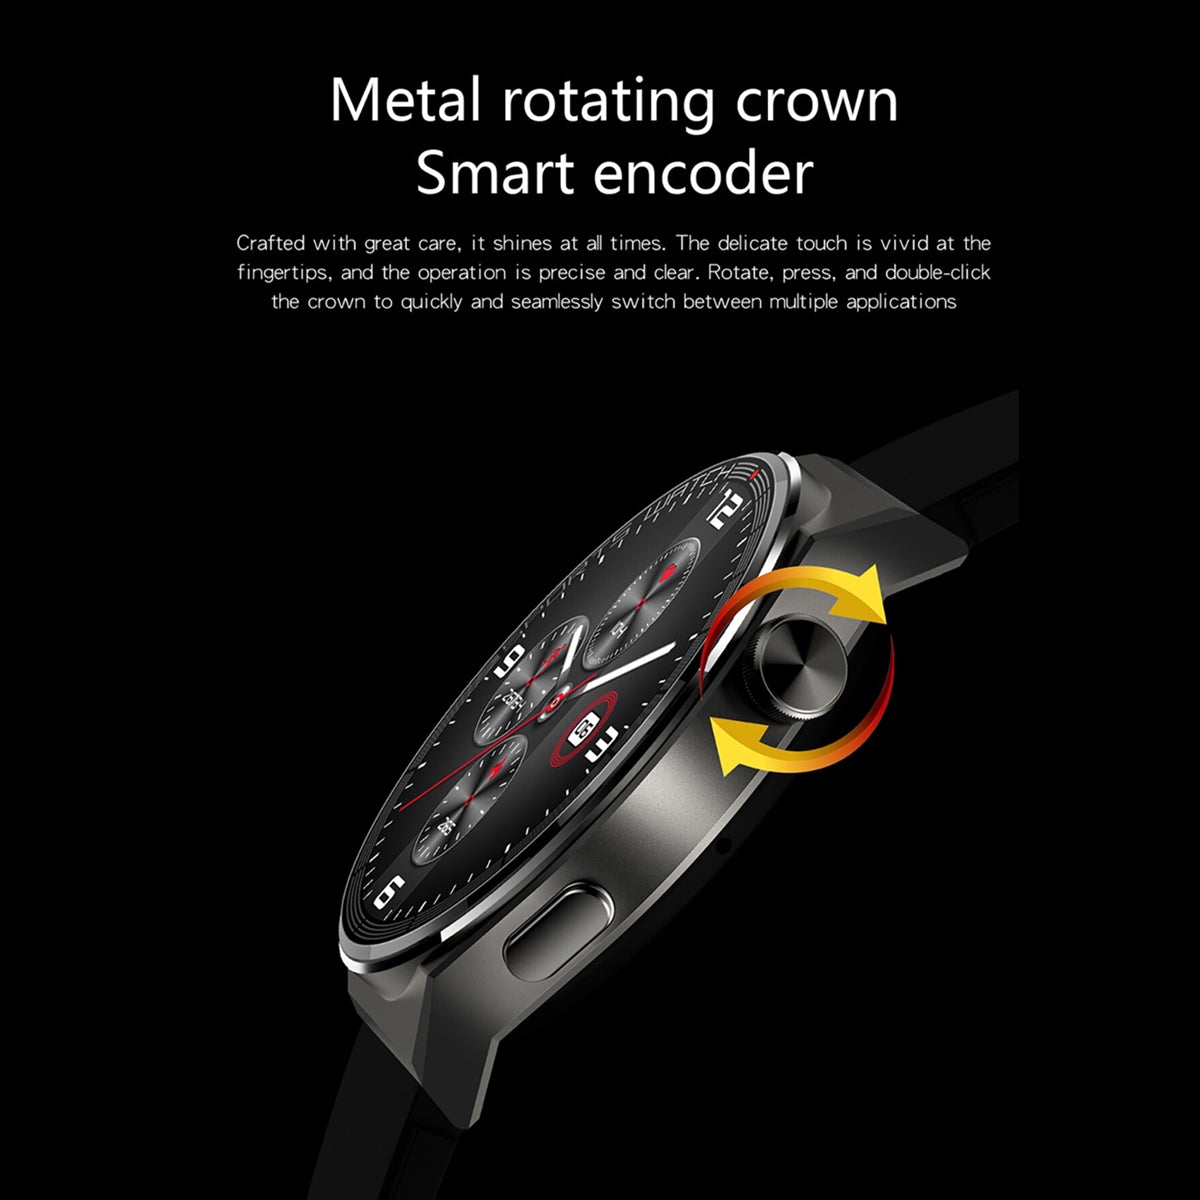 Fralugio Smart Watch Reloj Inteligente Kt62 Metal Full Touch